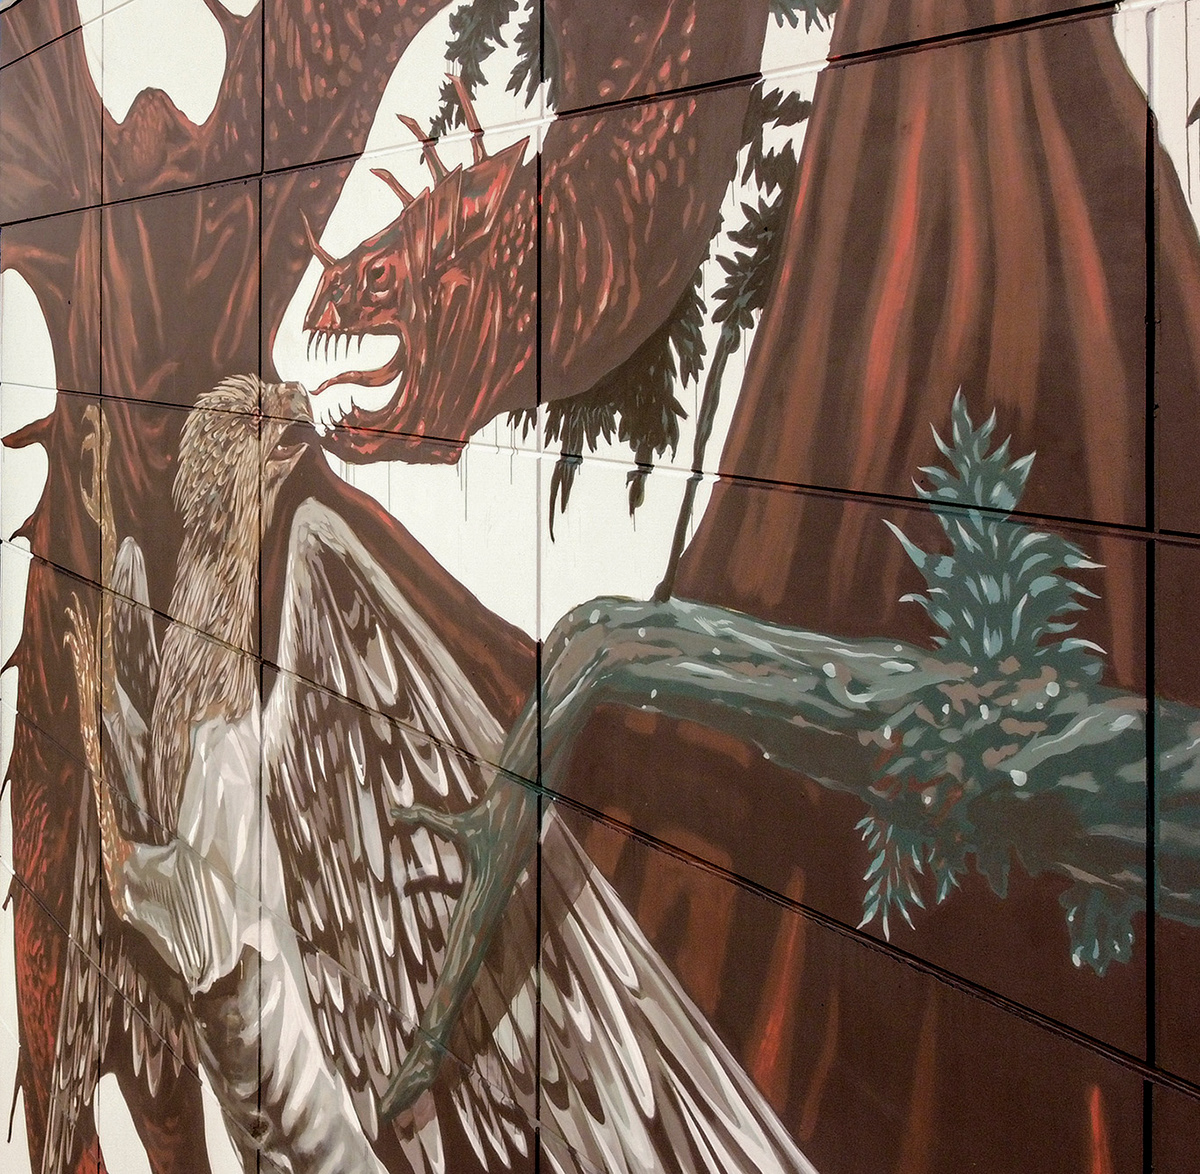 Cinema creatures dragon fantasy kingkong monsters Movies Nature urban art wall painting